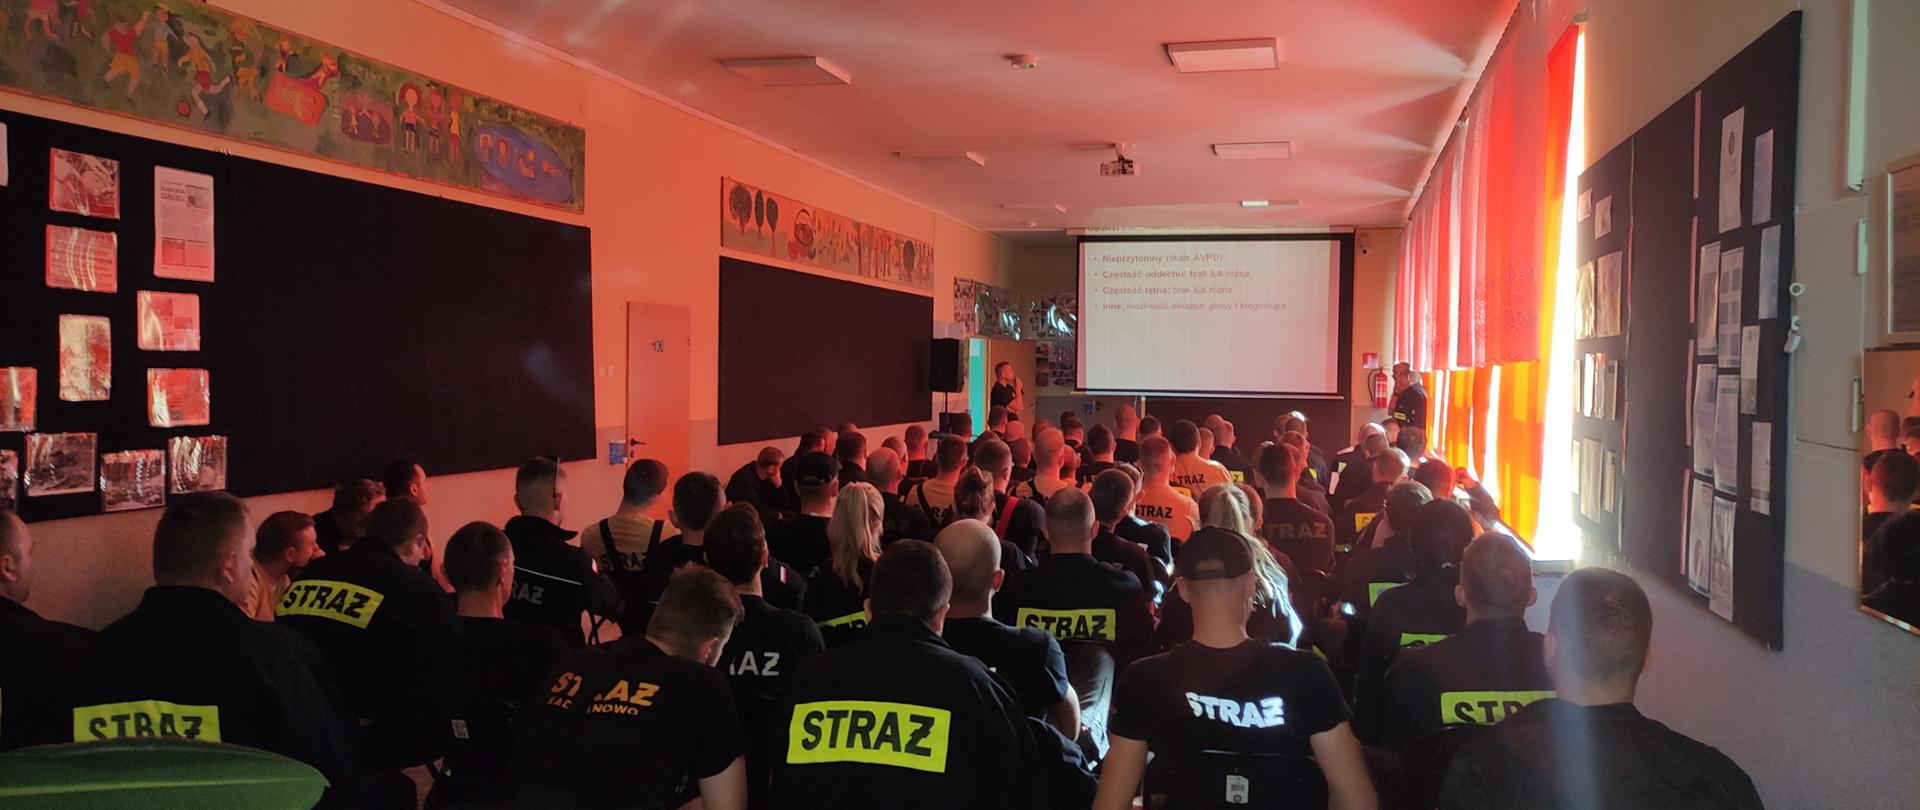 Zdjęcie przedstawia ochotników OSP podczas wykładu szkoleniowego. 